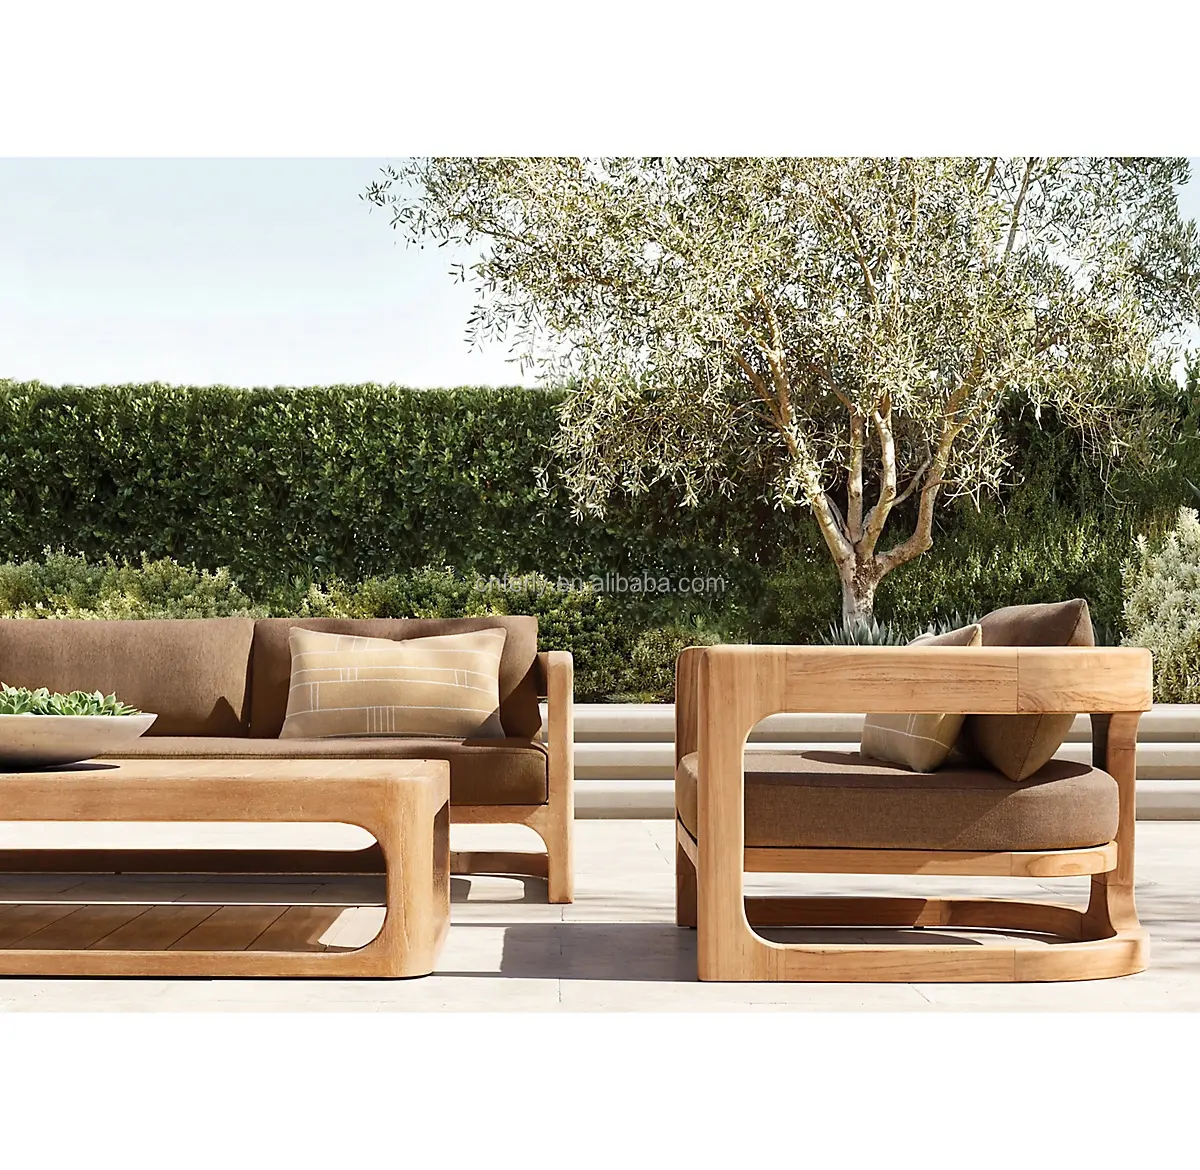 2022 nouveaux meubles de Patio extérieurs jardin meubles en bois avec coussin canapé teck meubles loisirs canapé ensemble